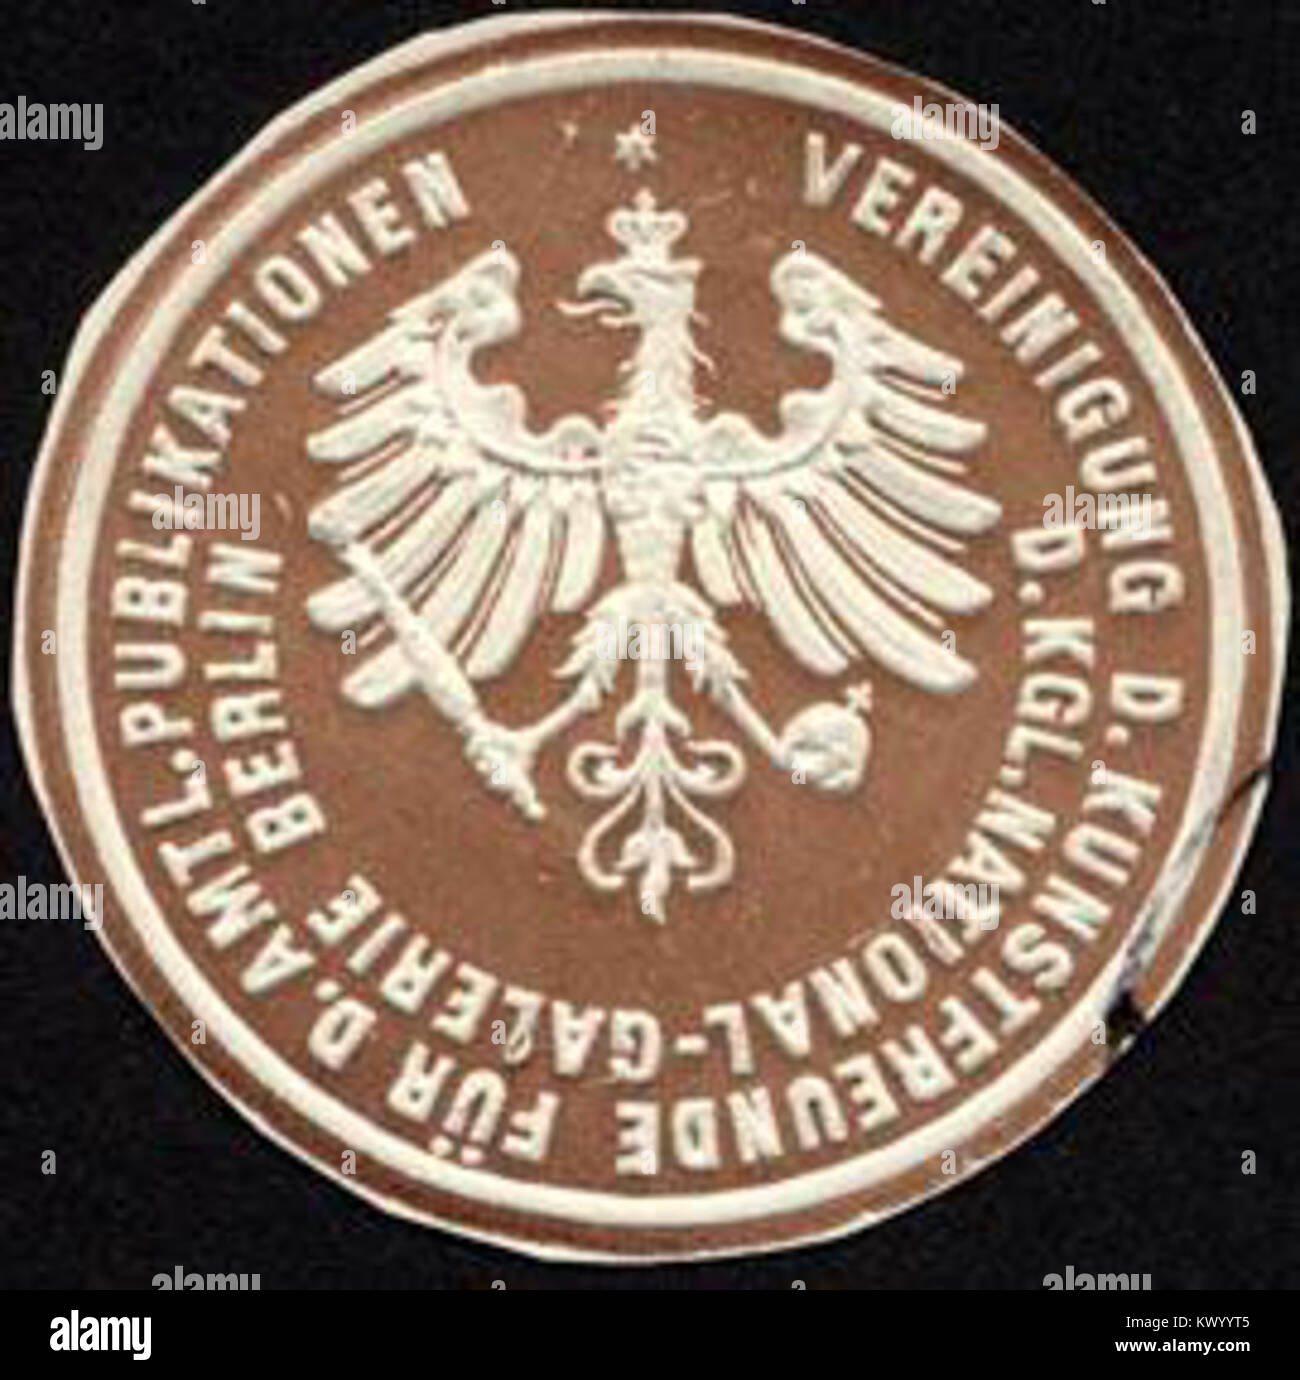 Siegelmarke Vereinigung der Kunstfreunde für amtliche Publikationen der Königlichen National - Galerie Berlin W0227733 Stock Photo